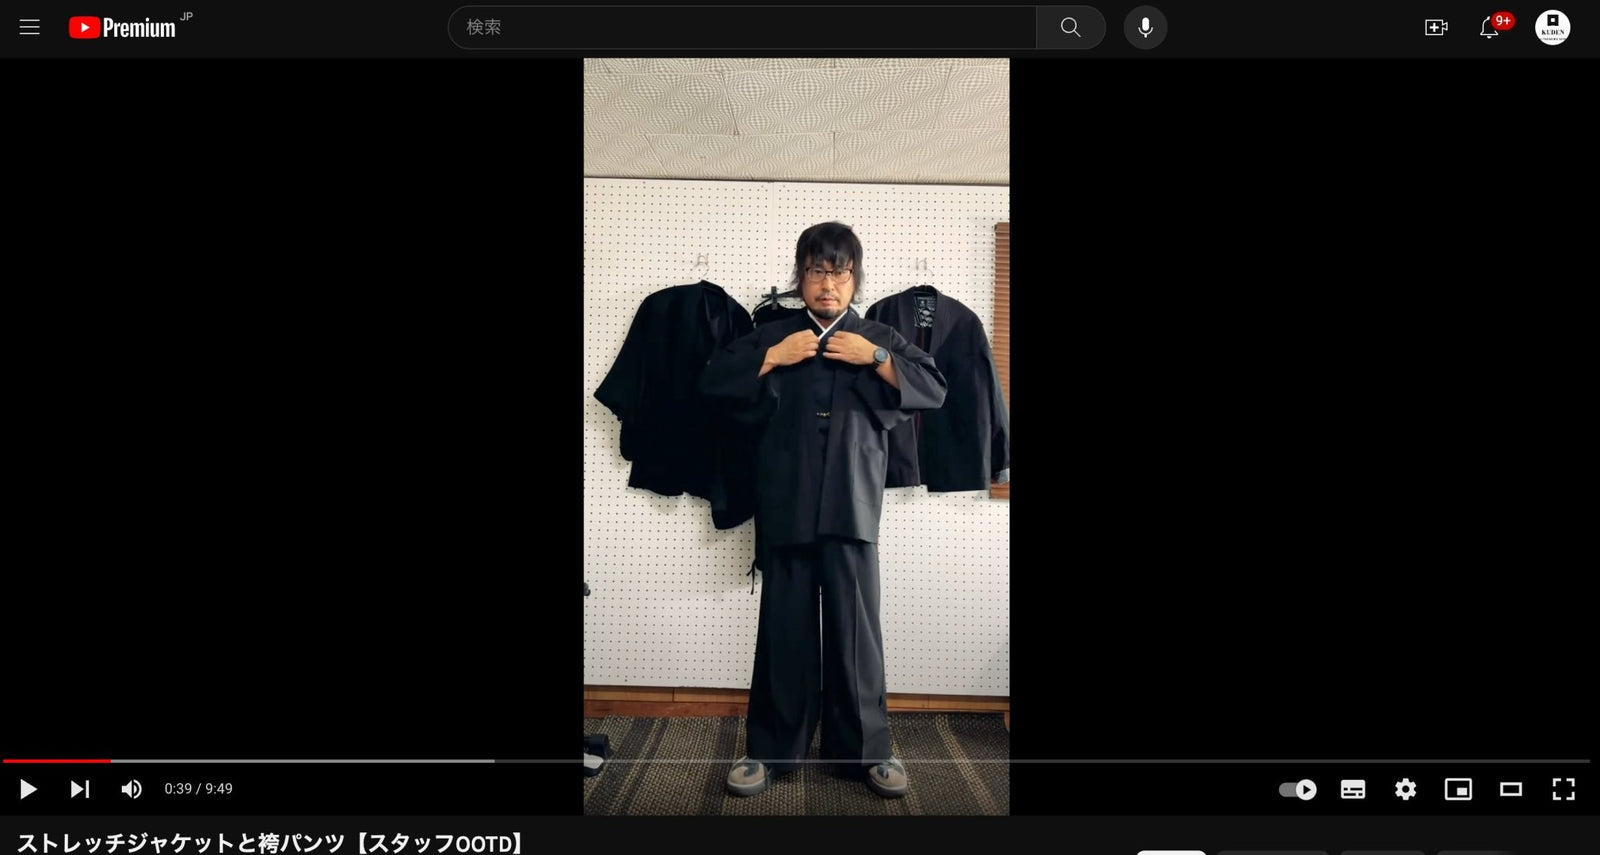 Stretch Jacket + Hakama Pants + Work Jacket【Staff Wearing Video】 - KUDEN by TAKAHIRO SATO